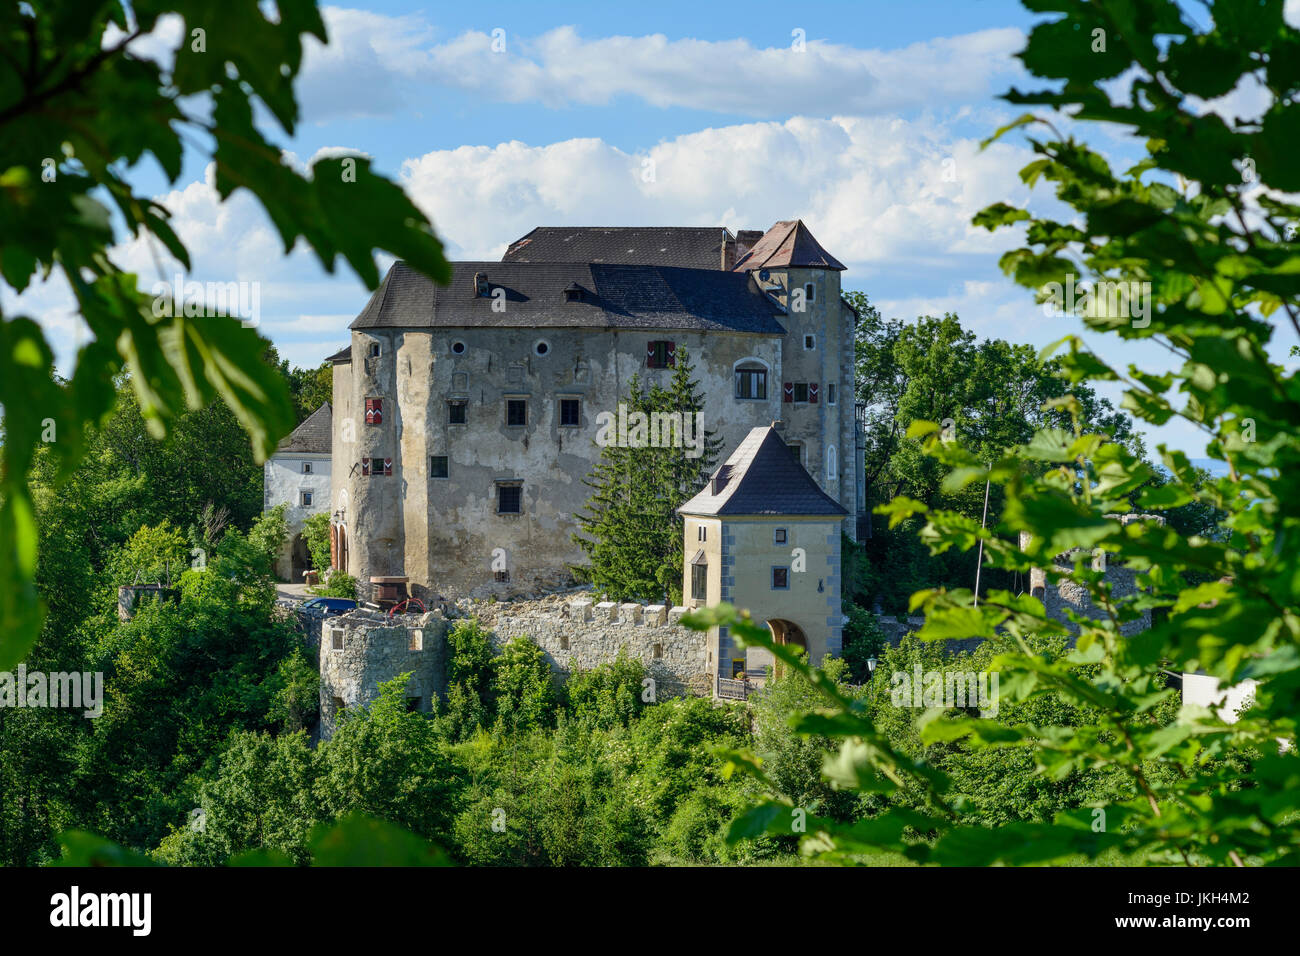 Plankenstein Castle, Texingtal, Mostviertel, Niederösterreich, Lower Austria, Austria Stock Photo